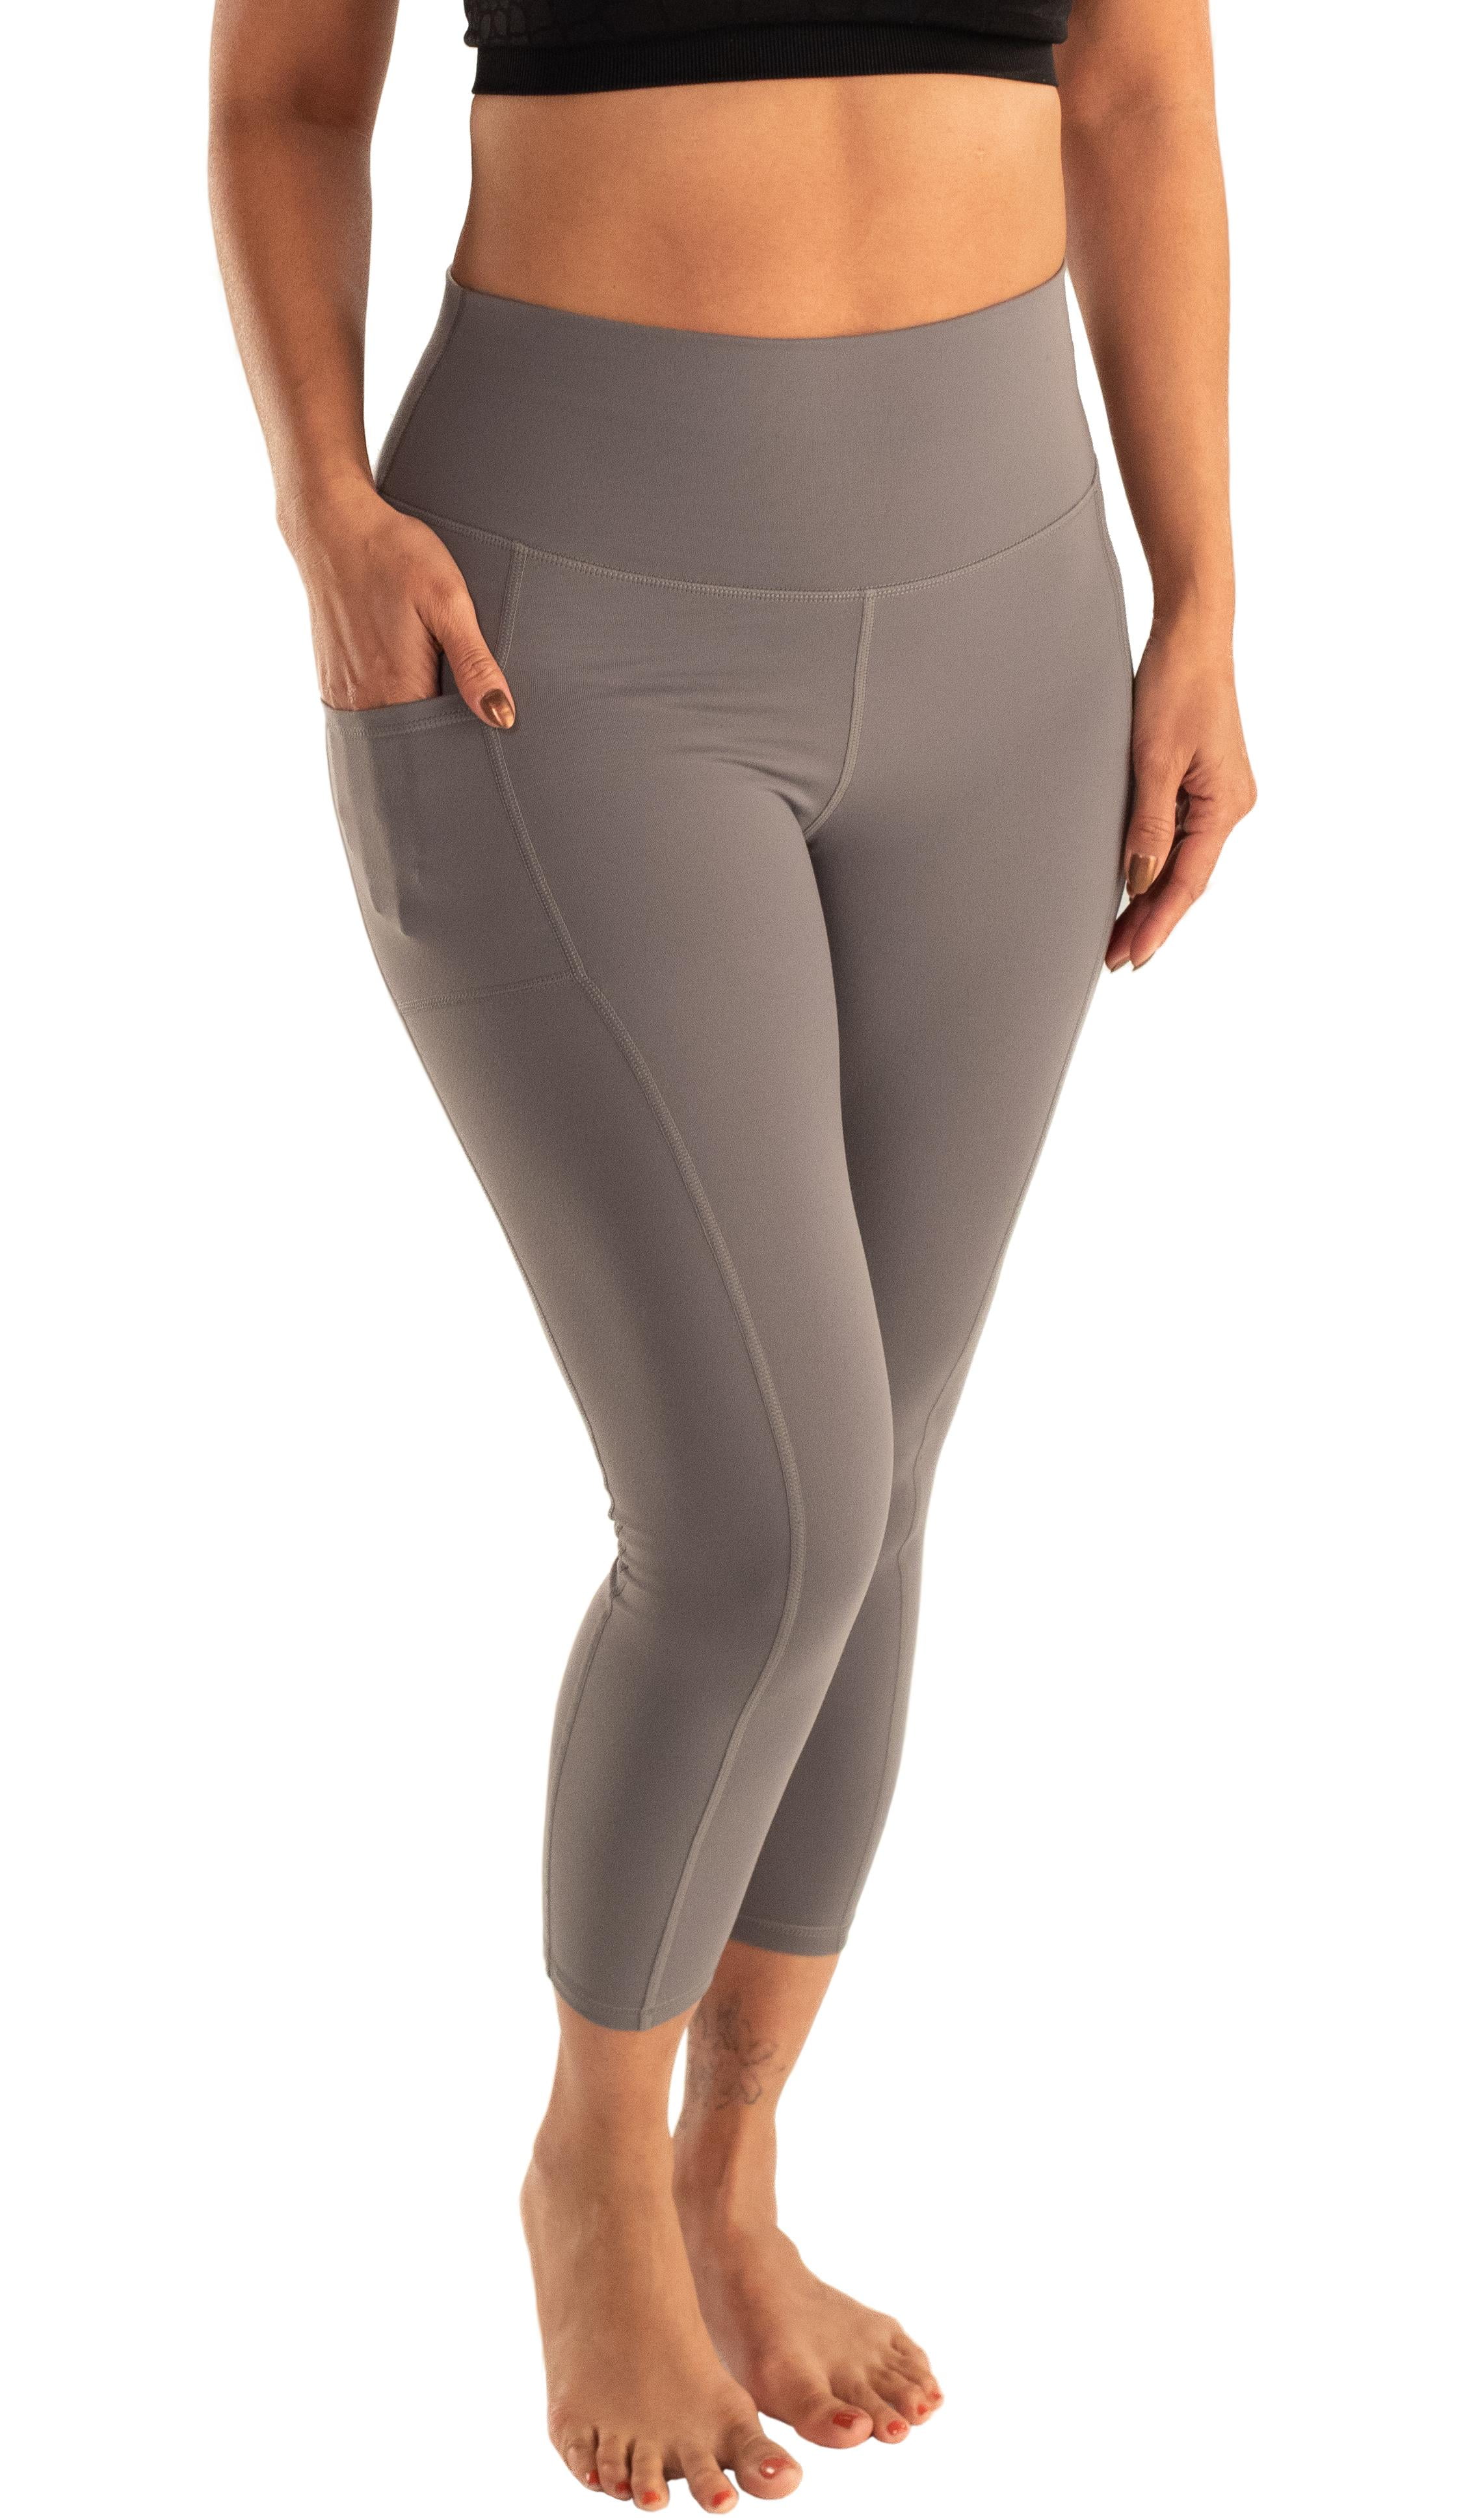 Lumana Leakproof Yoga Pant Leggings, 22 Inseam, Gray, 1X, Single Pair